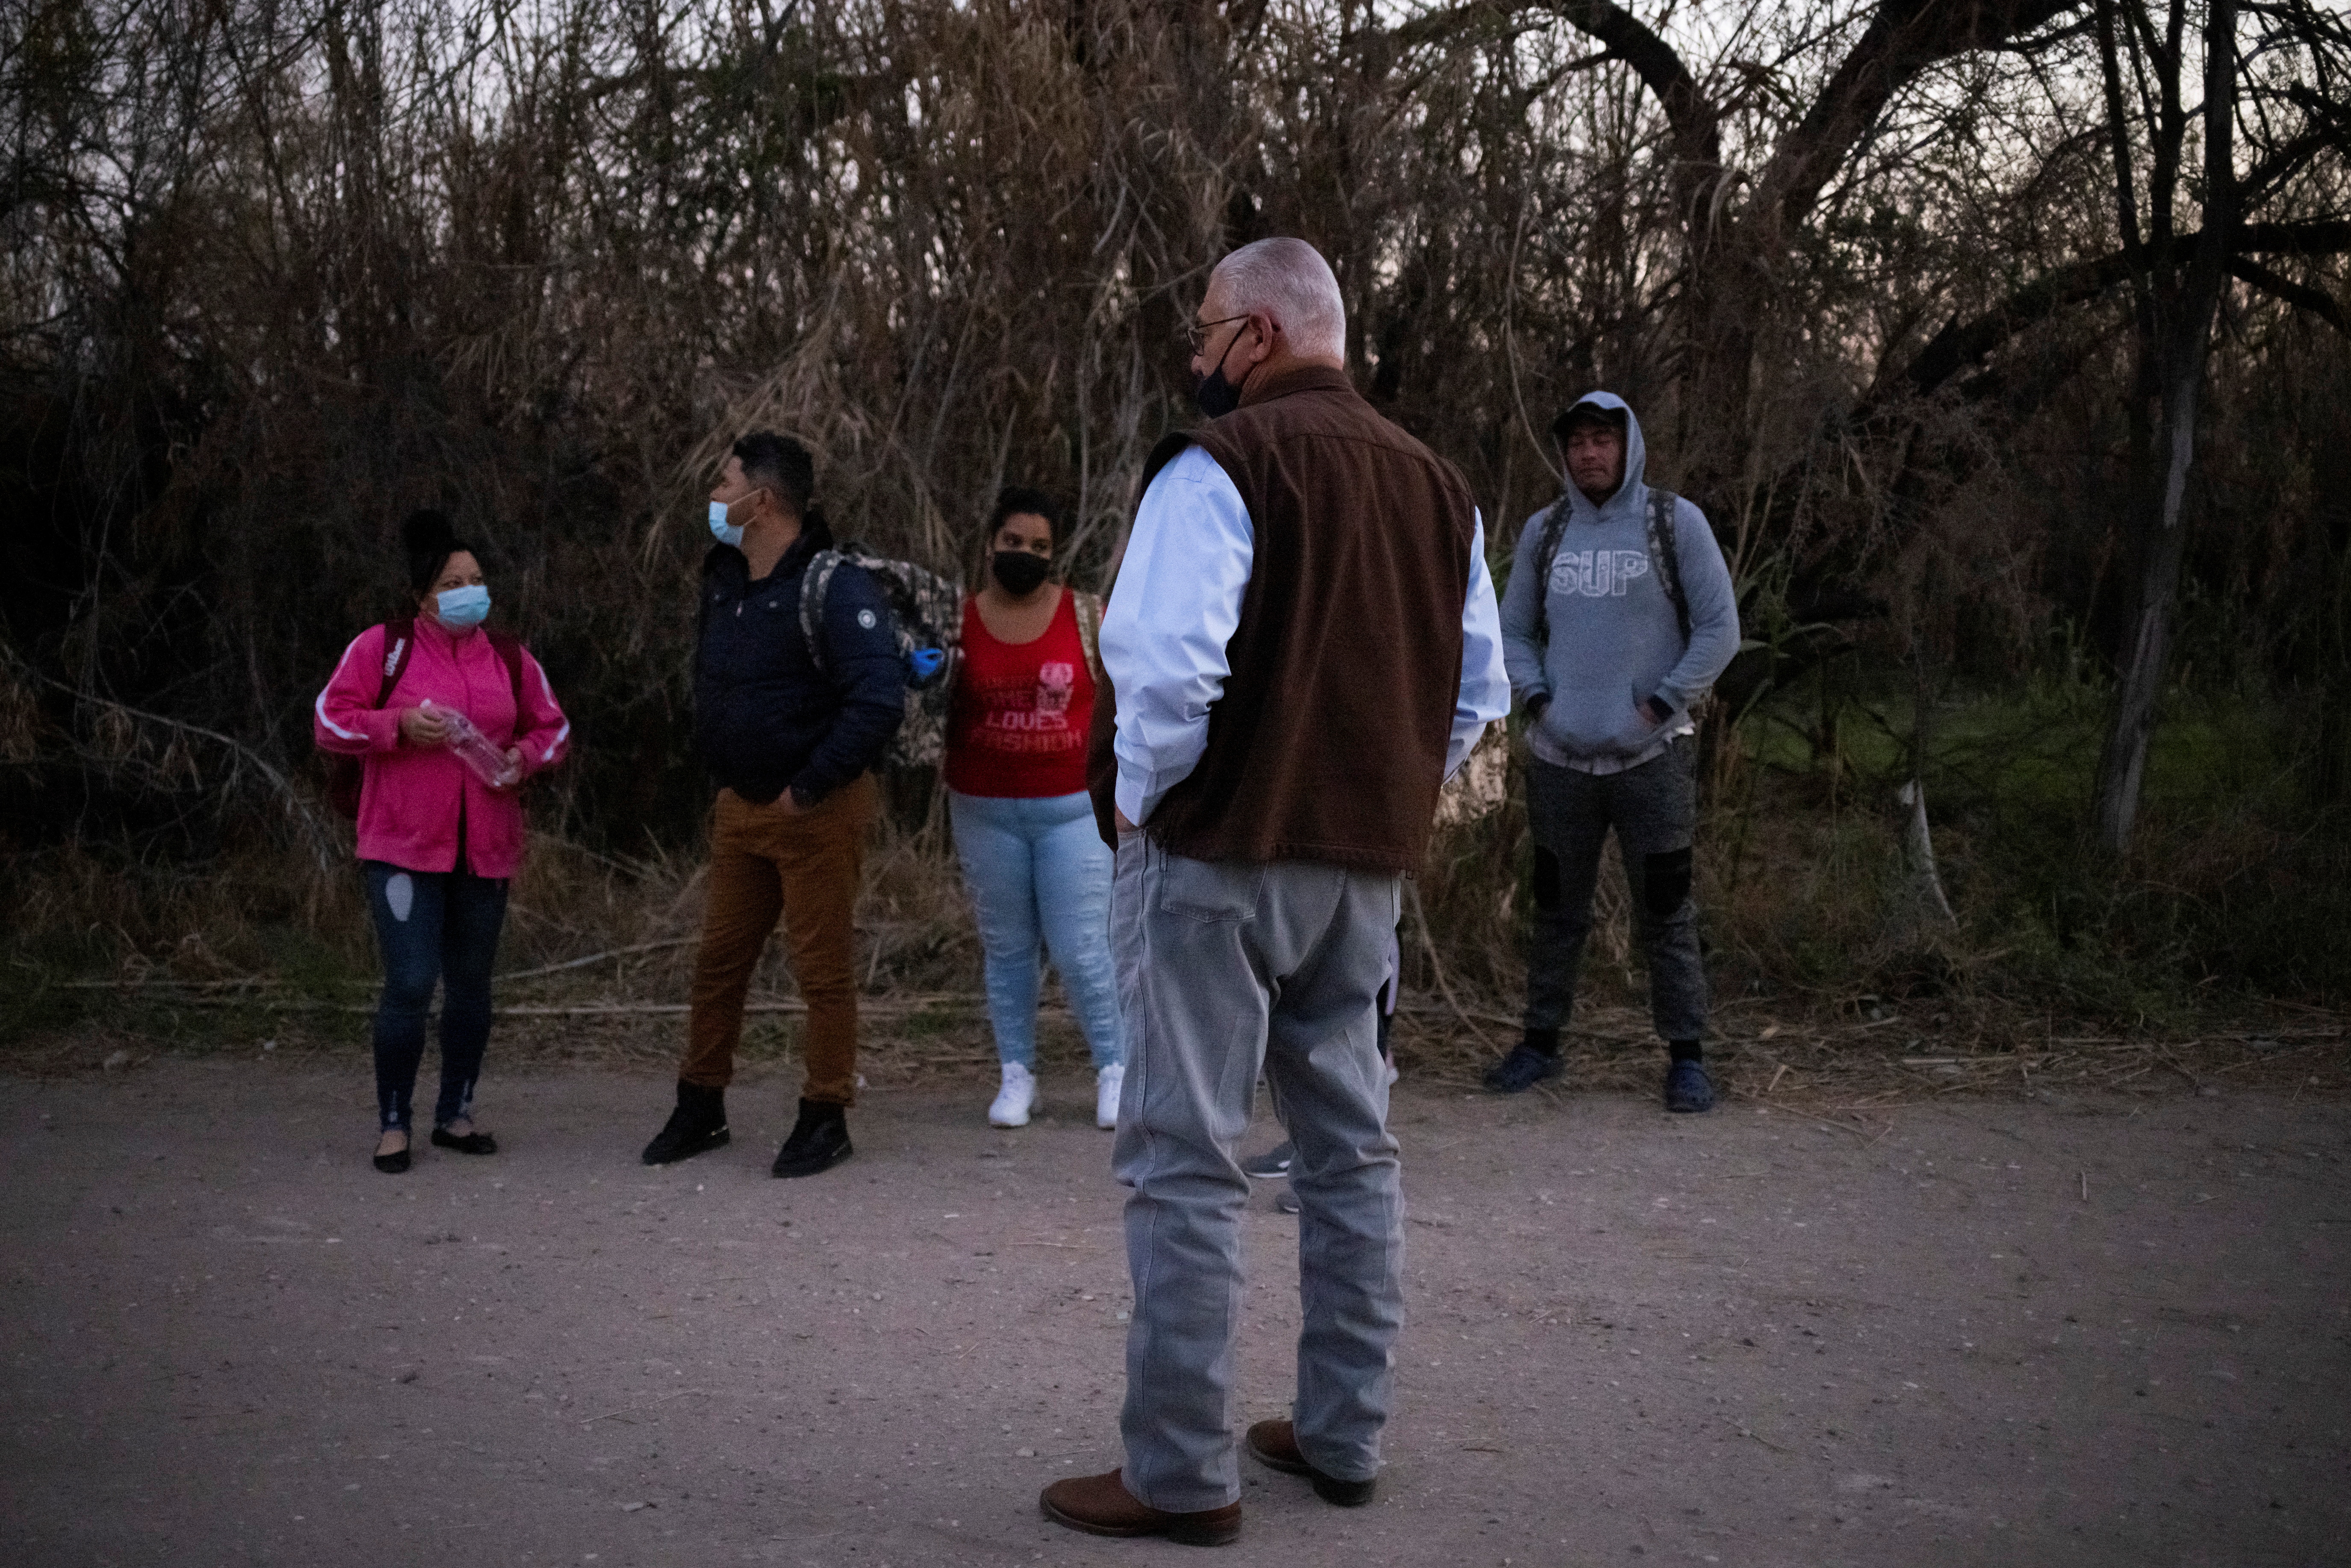 Migrants are stopped in Del Rio, Texas